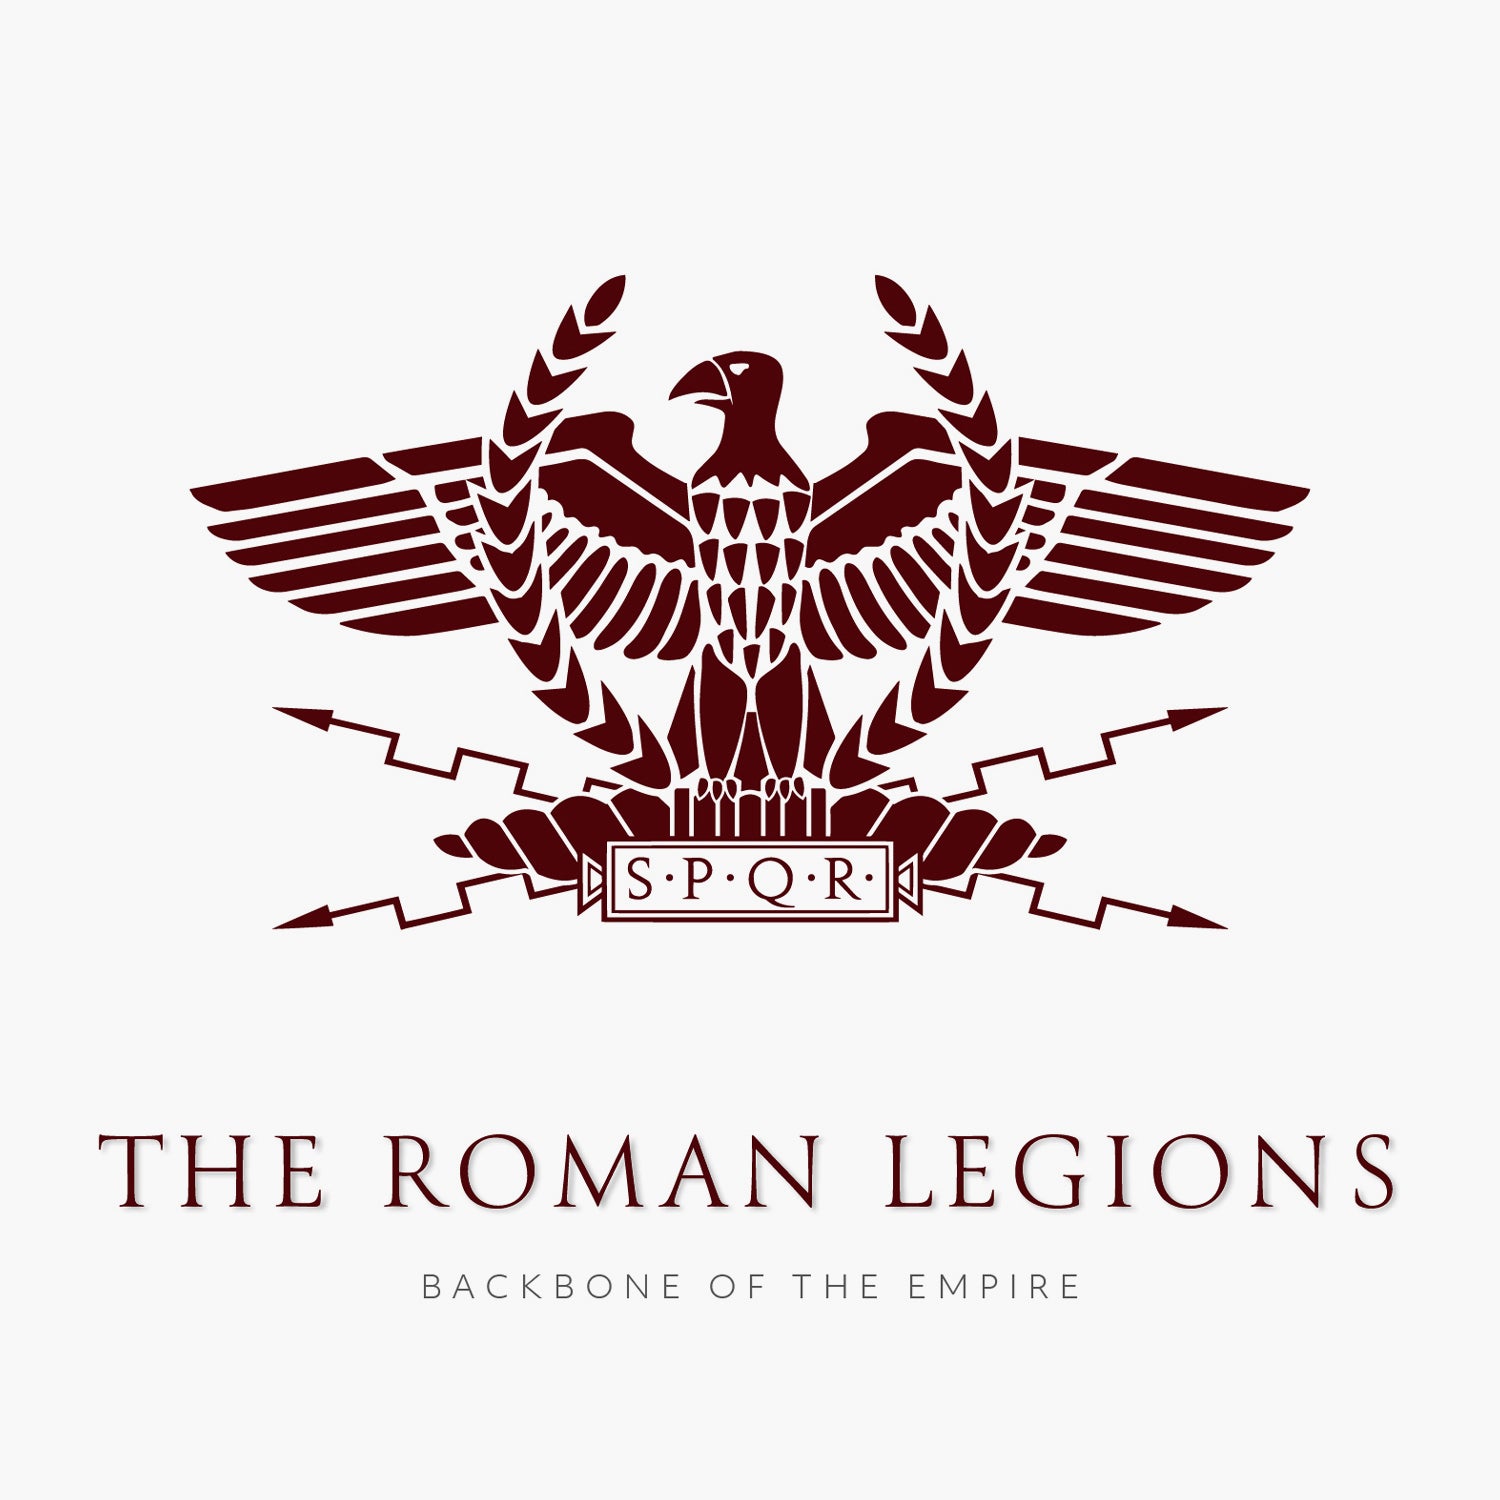 Roman Legions - The Backbone of the Empire